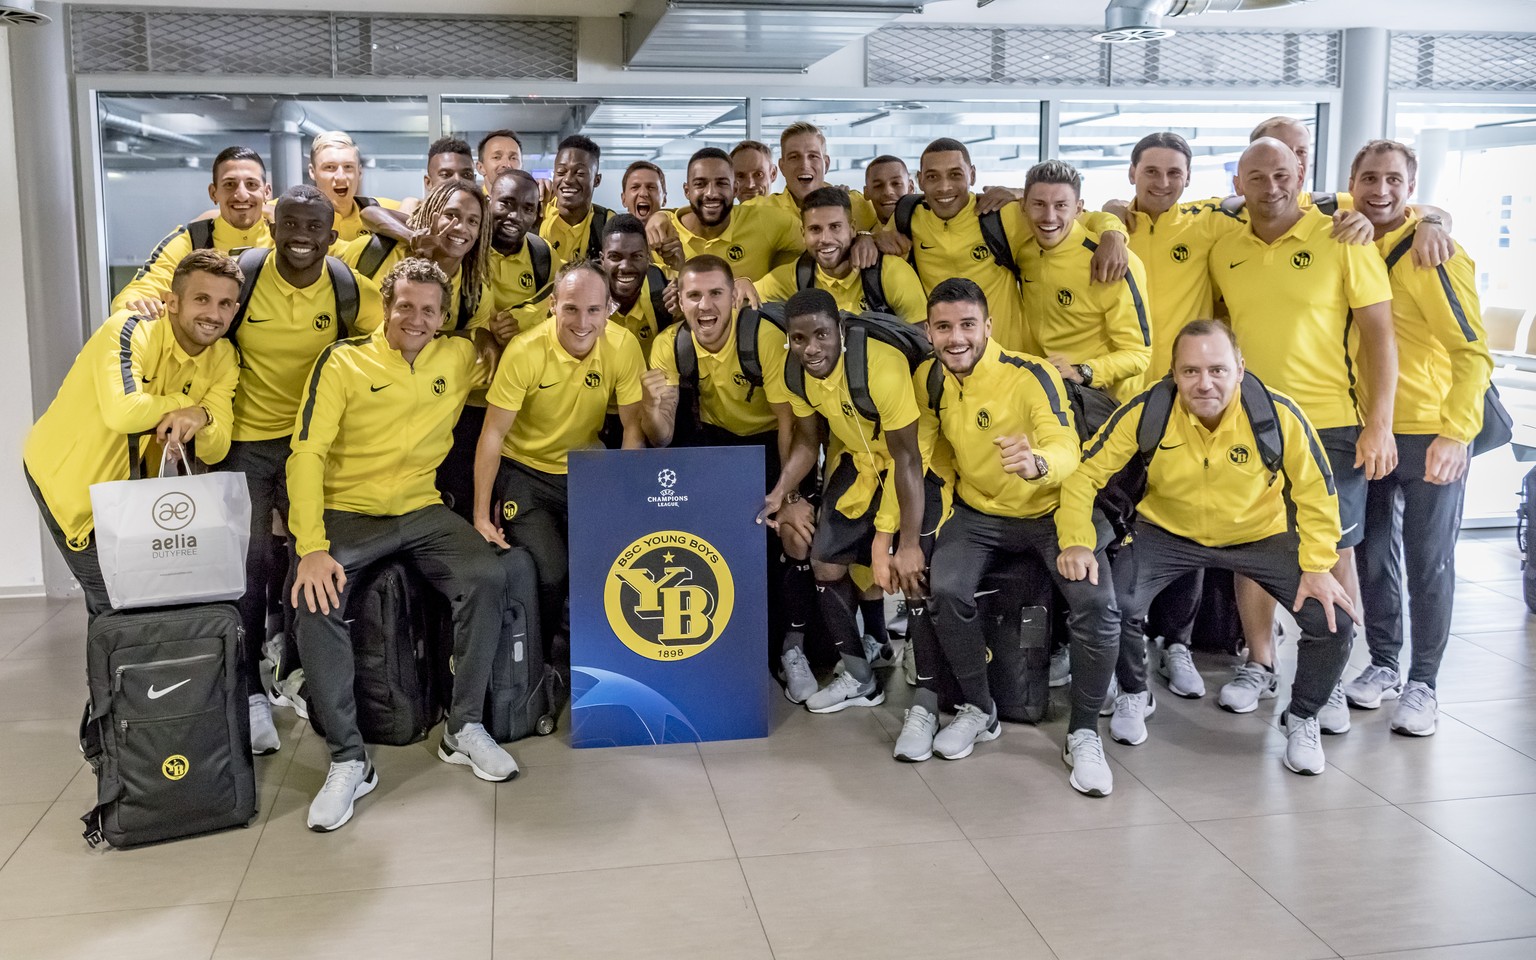 Die YB-Spieler und Staff bei ihrer Ankunft am Flughafen Bern nach dem Champions League-Playoff-Rueckspiel zwischen Dinamo Zagreb und BSC Young Boys in Bern am 29. August 2018. (KEYSTONE/Thomas Hodel)